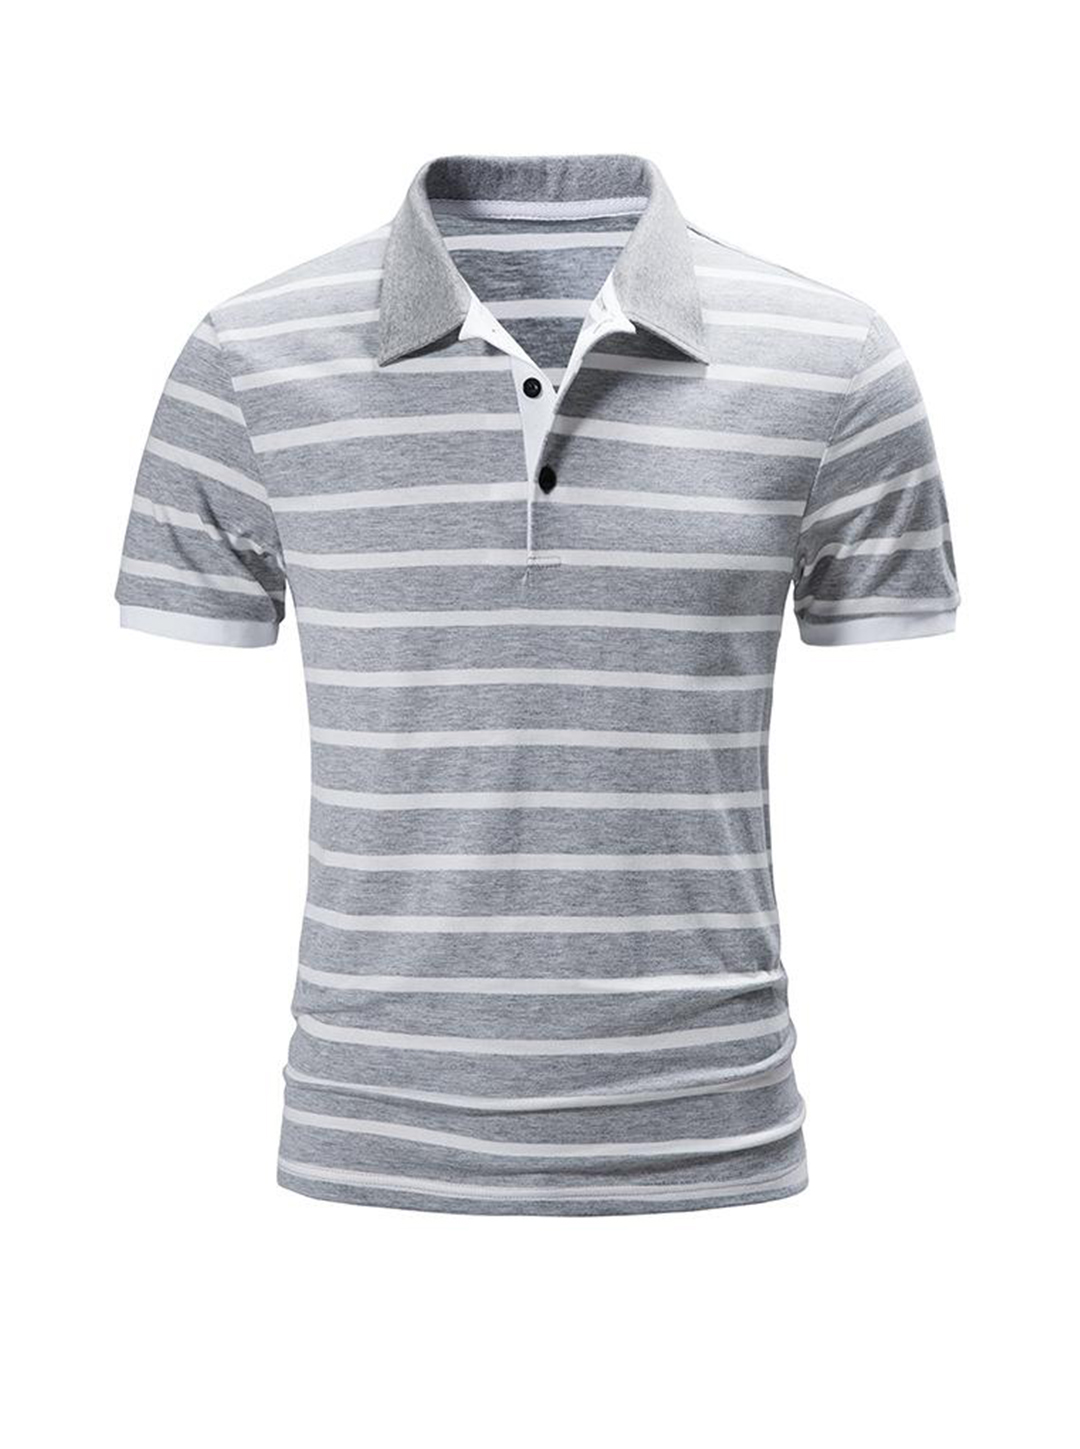 Men's Aubrey Striped Short Sleeve T-shirt-poisonstreetwear.com